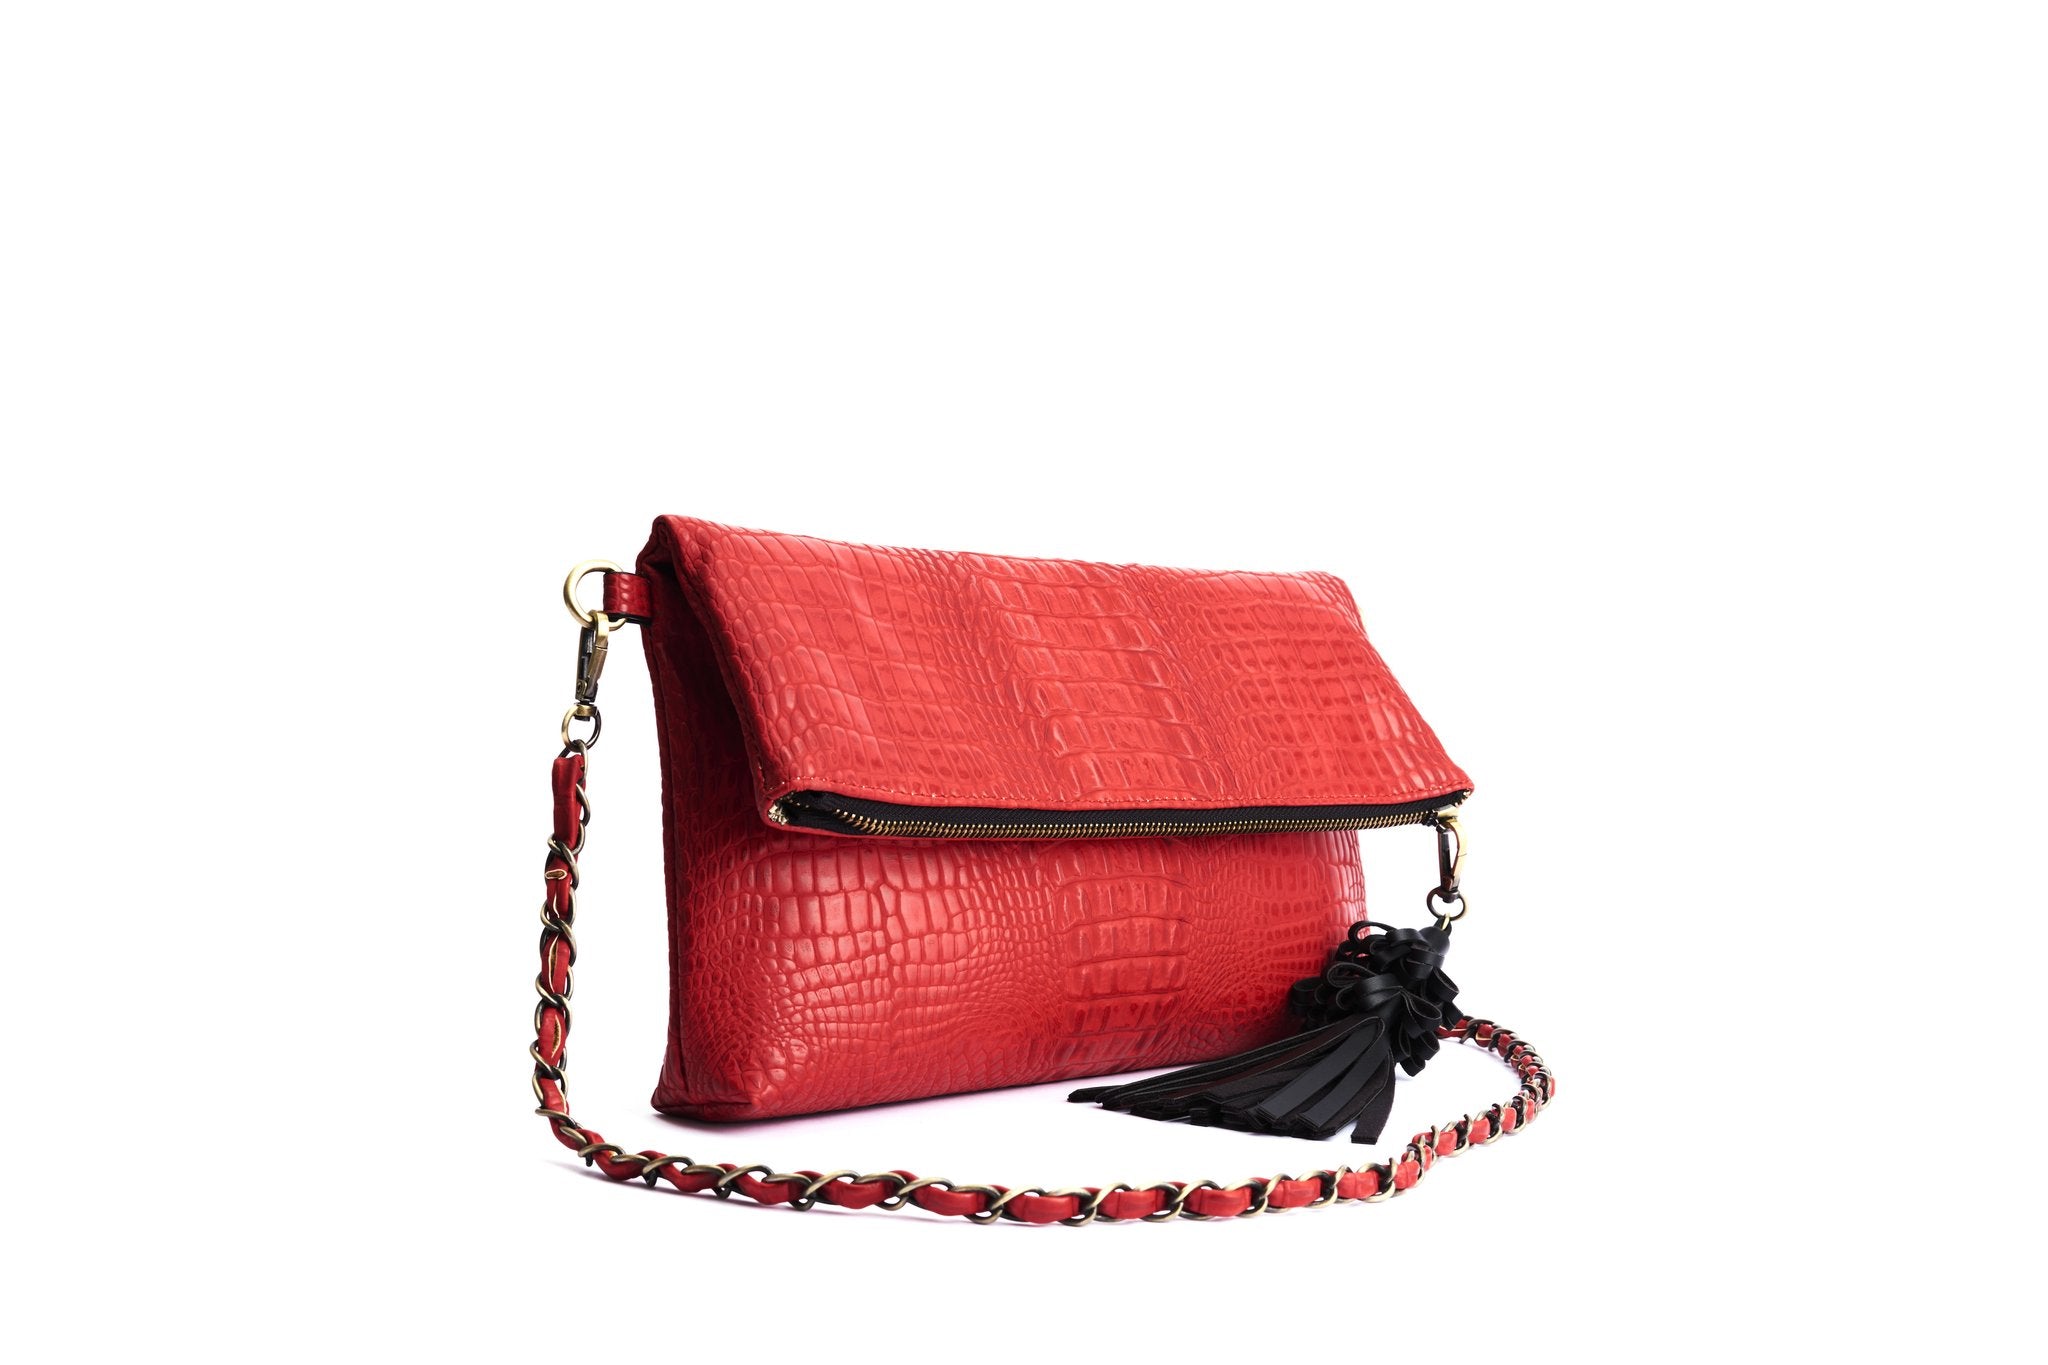 Krokotiilikuvioinen, punainen clutch-laukku Lola Ramonalta, malli Joy Red Crocodile. Mukana olkahihna.